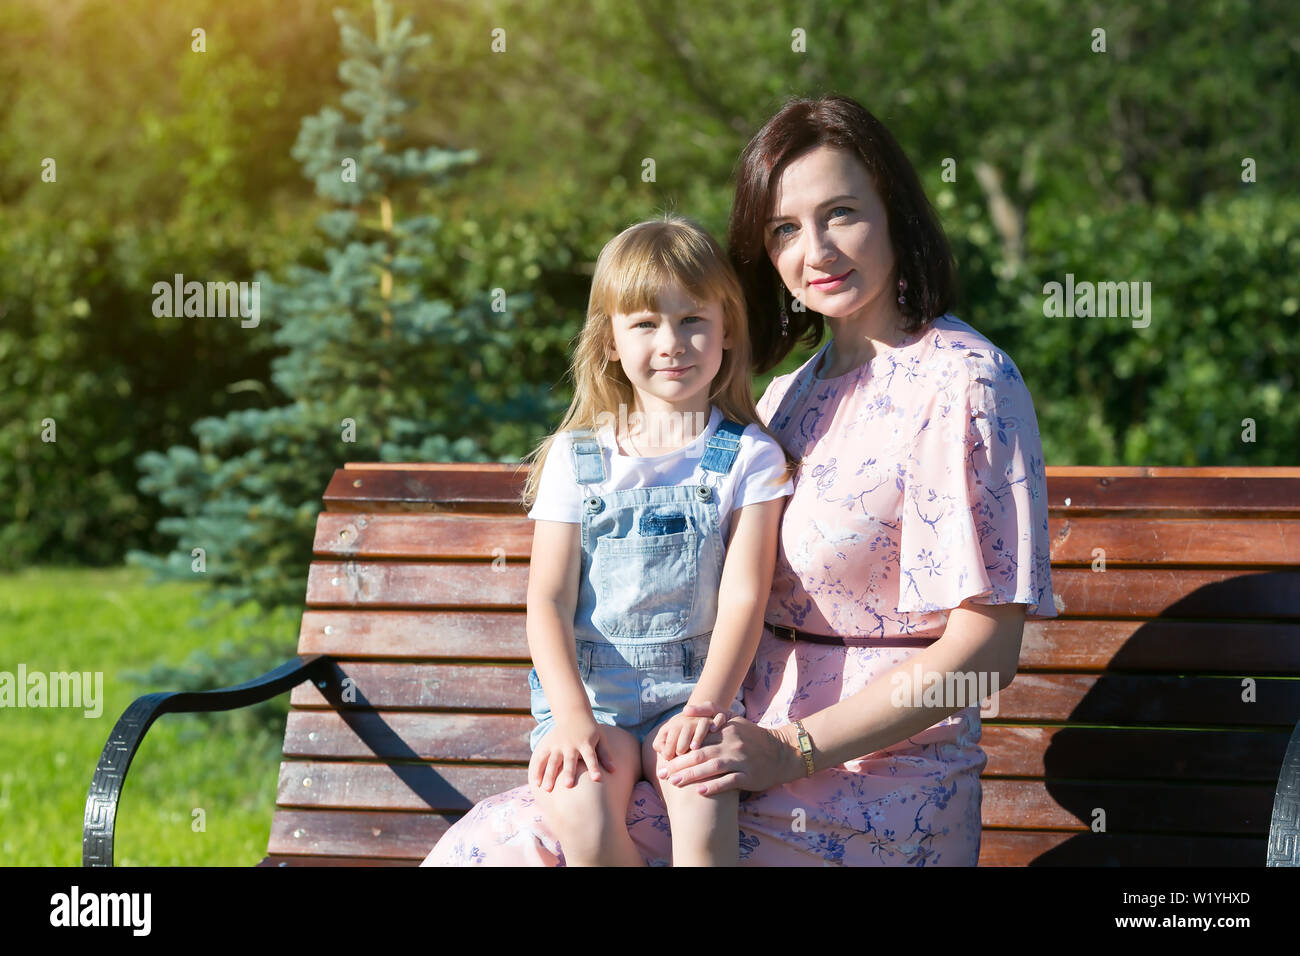 Junge Frau mit einem kleinen Mädchen auf einer Bank in einem Jahre Park Stockfoto